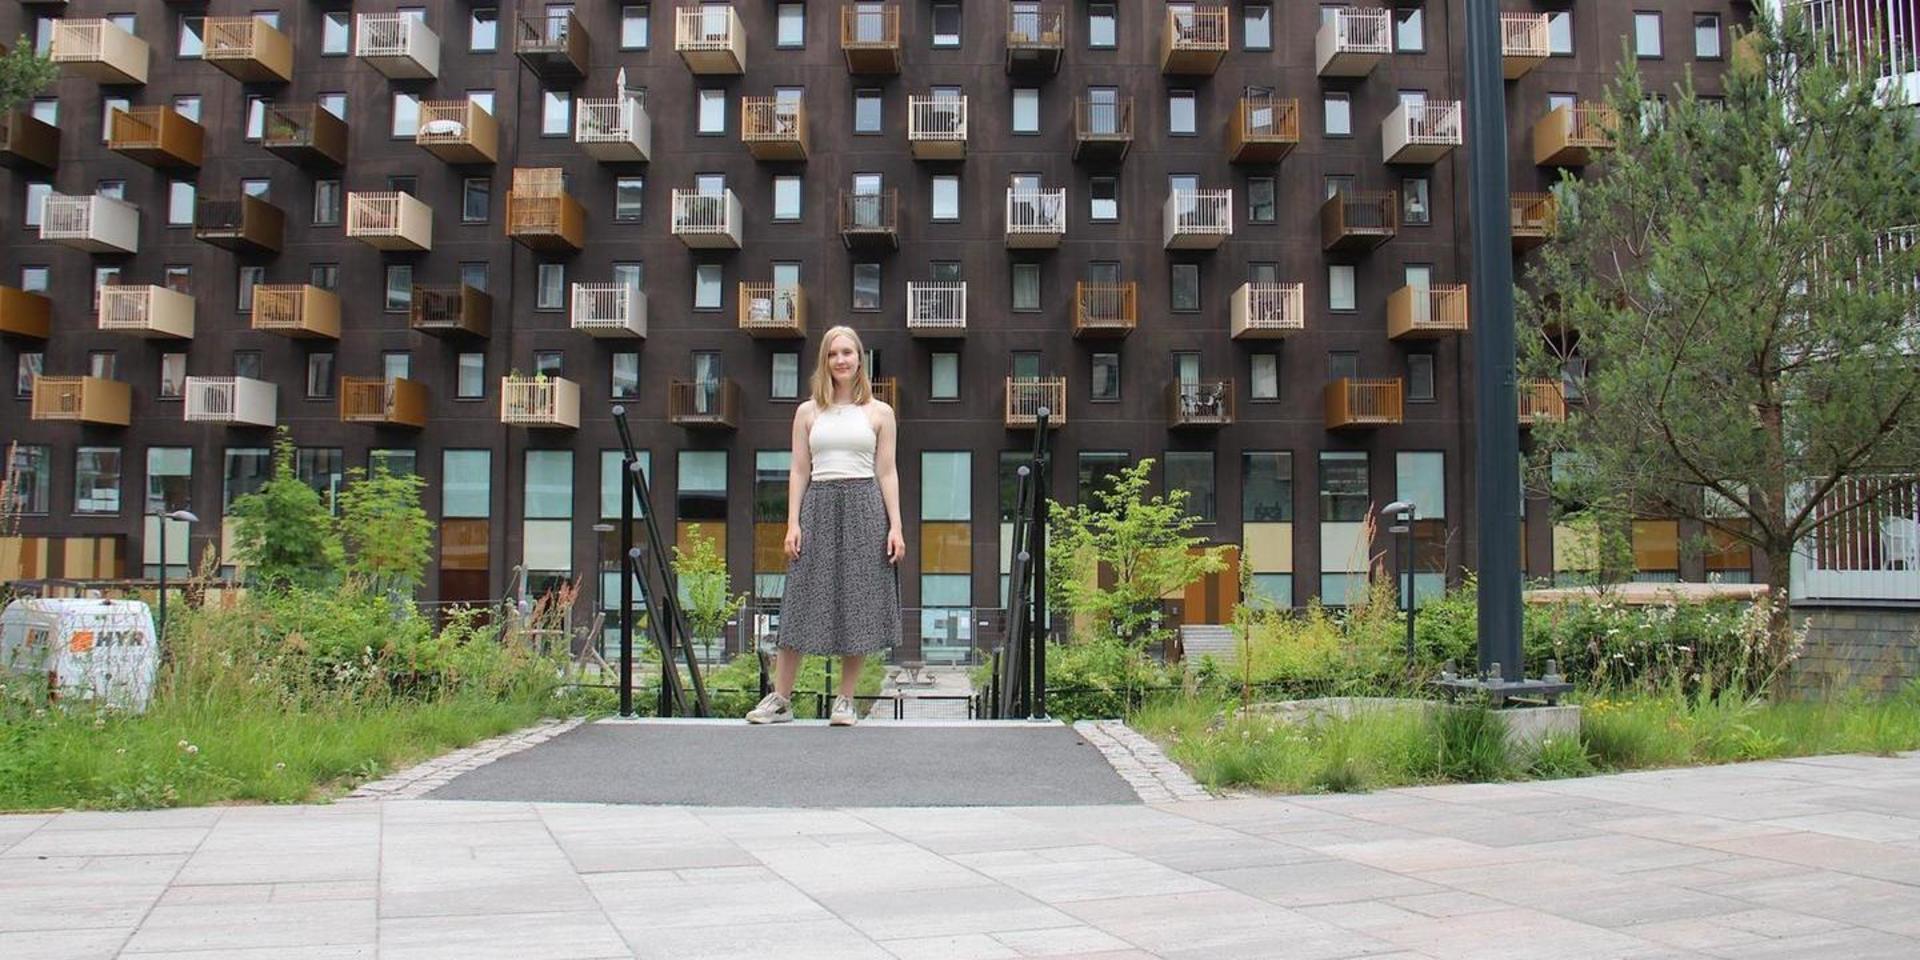 Arkitektstudenten och Mölndalsbon Katarina Karlkvist kommenterar några av kommunens nyaste byggnader.